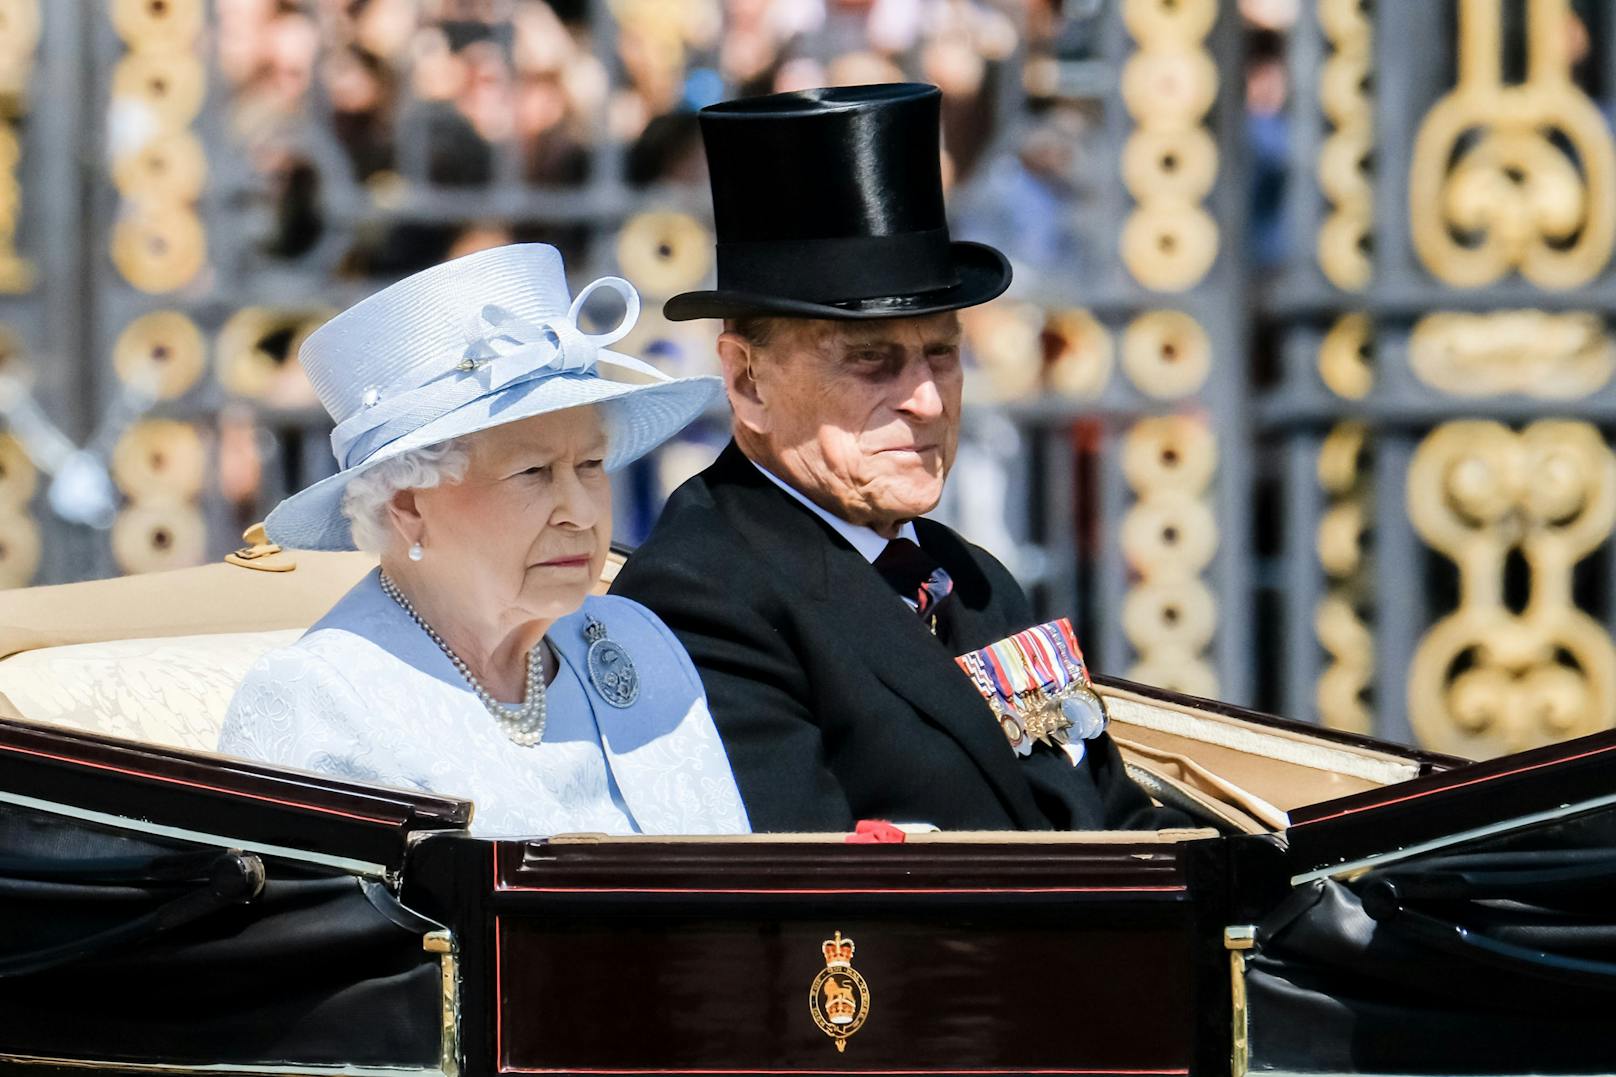 Mit einem Vermögen von geschätzt 560 Millionen landen das wohl bekannteste Promi-Paar&nbsp;Queen Elizabeth II. &amp; Prince Philipp auf dem letzten Platz.